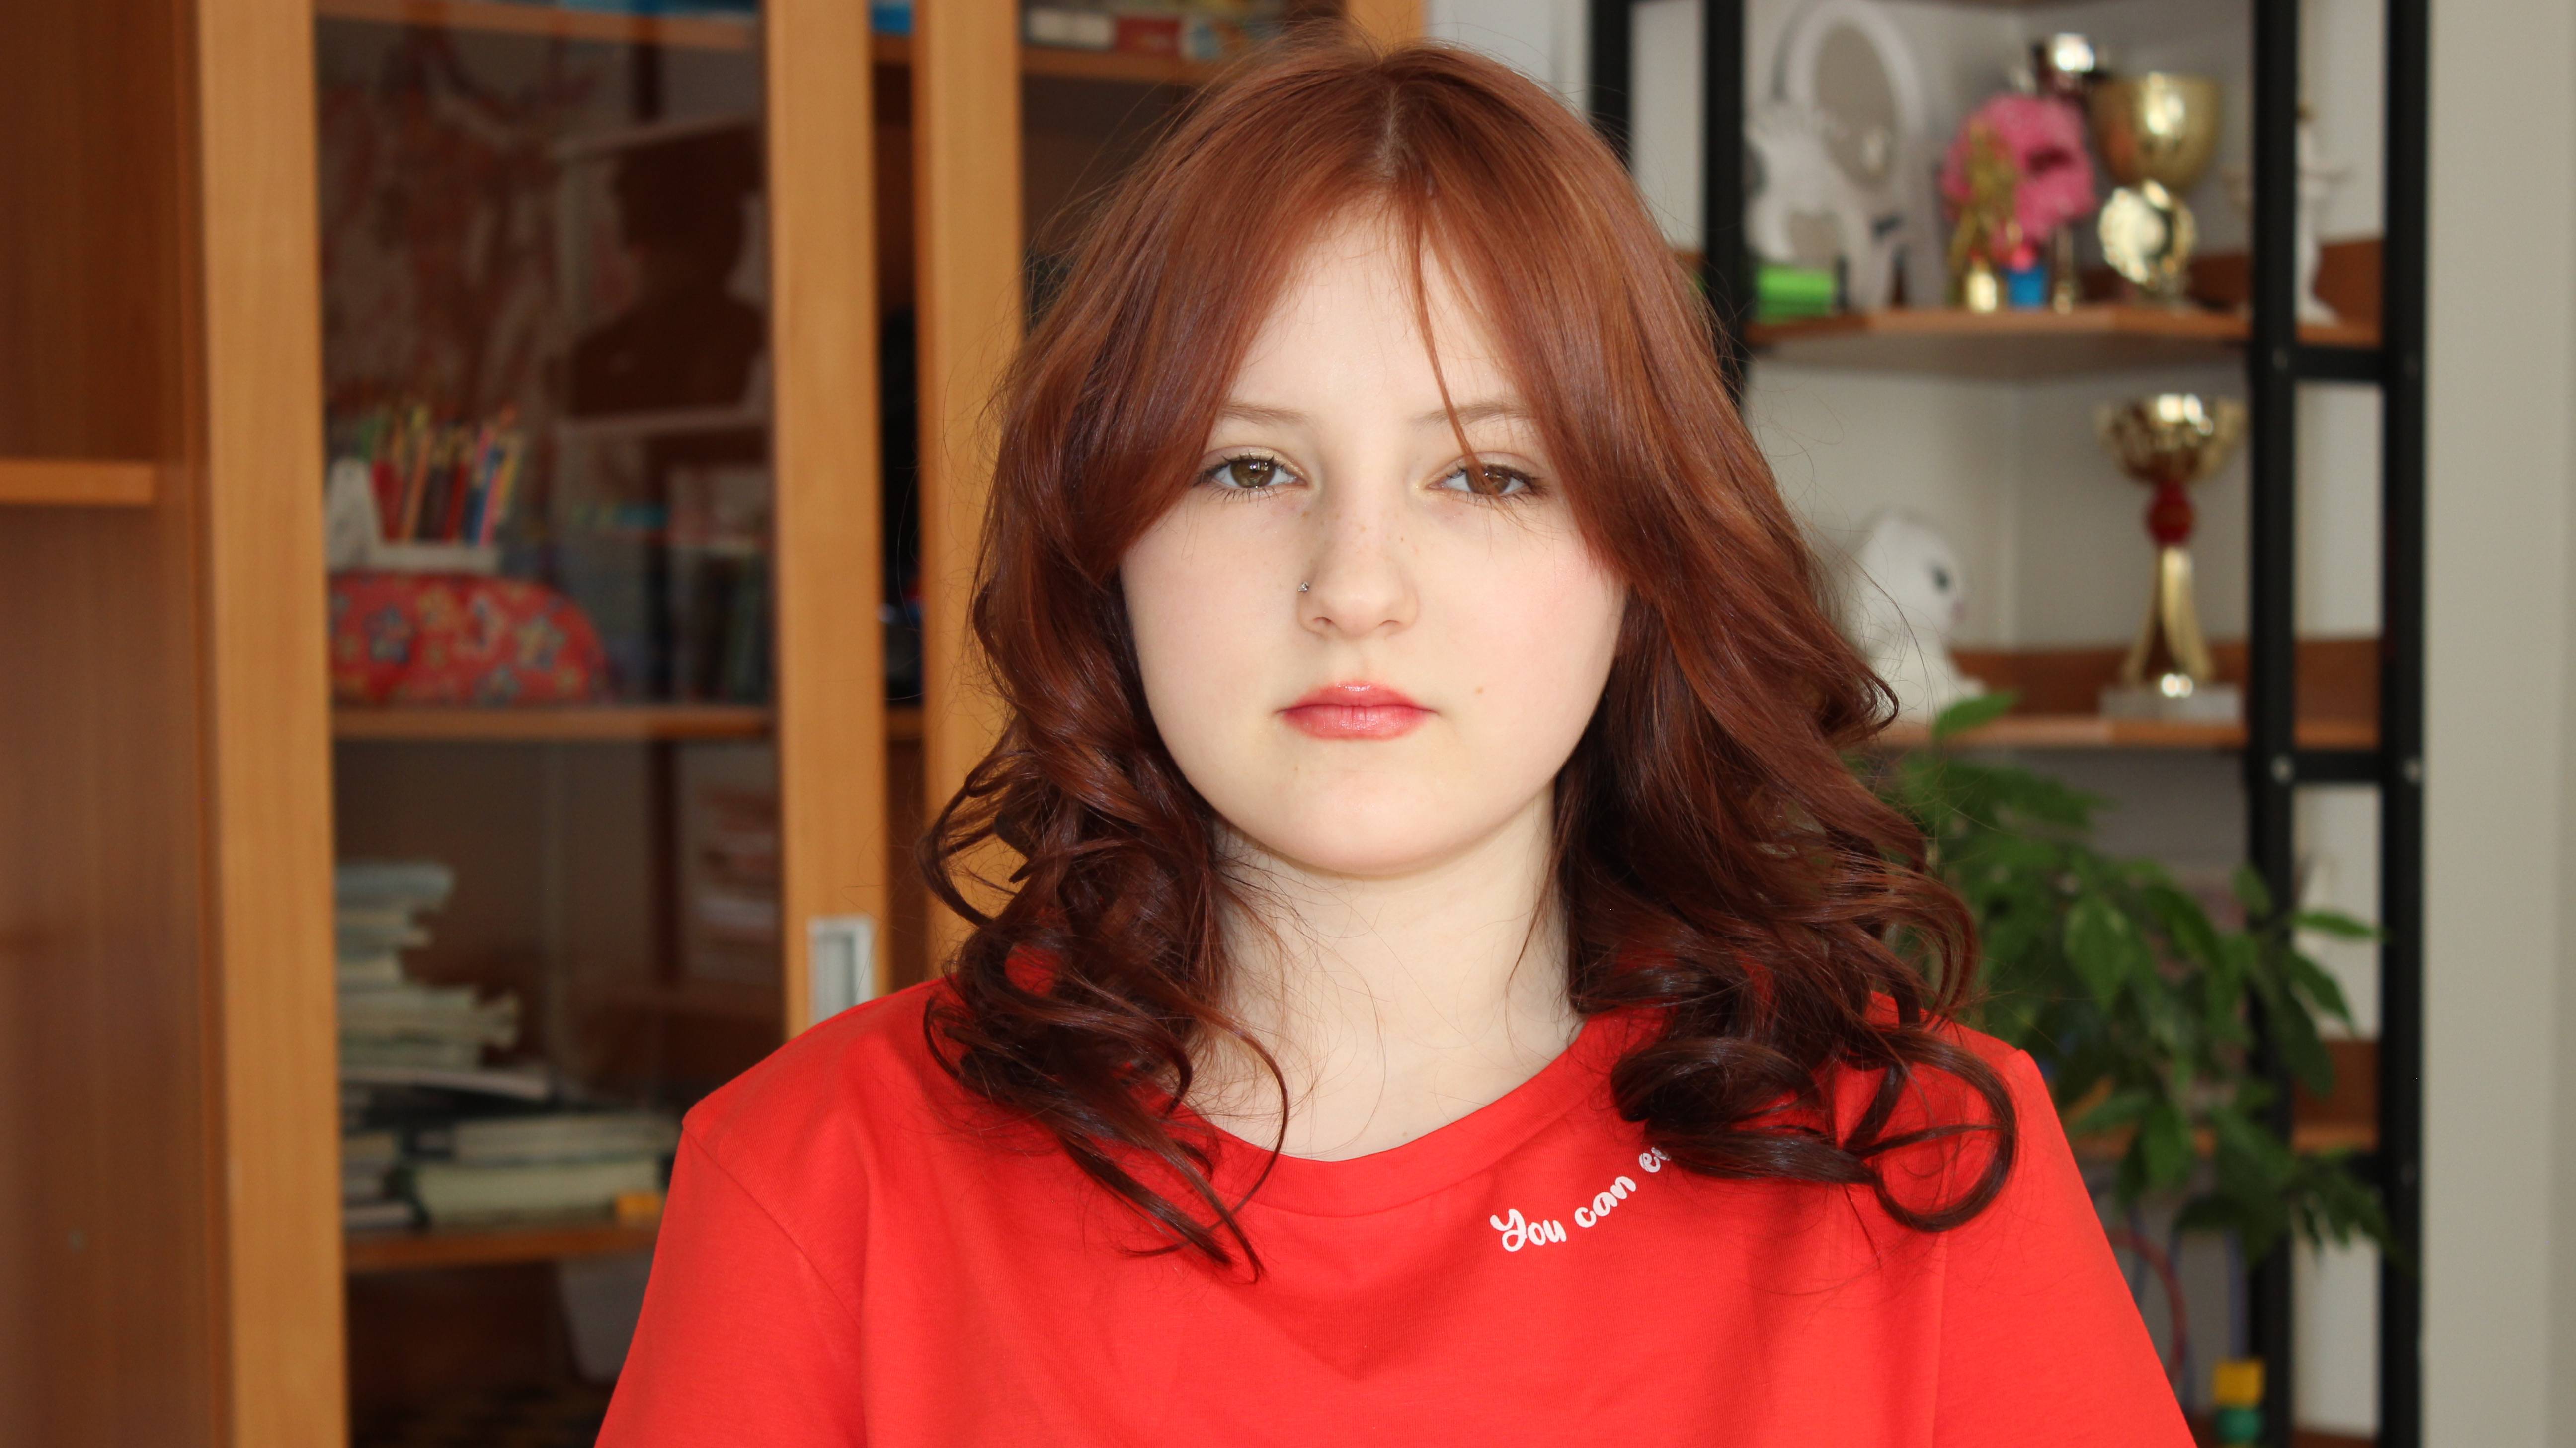 Ольга, 15 лет (видео-анкета)